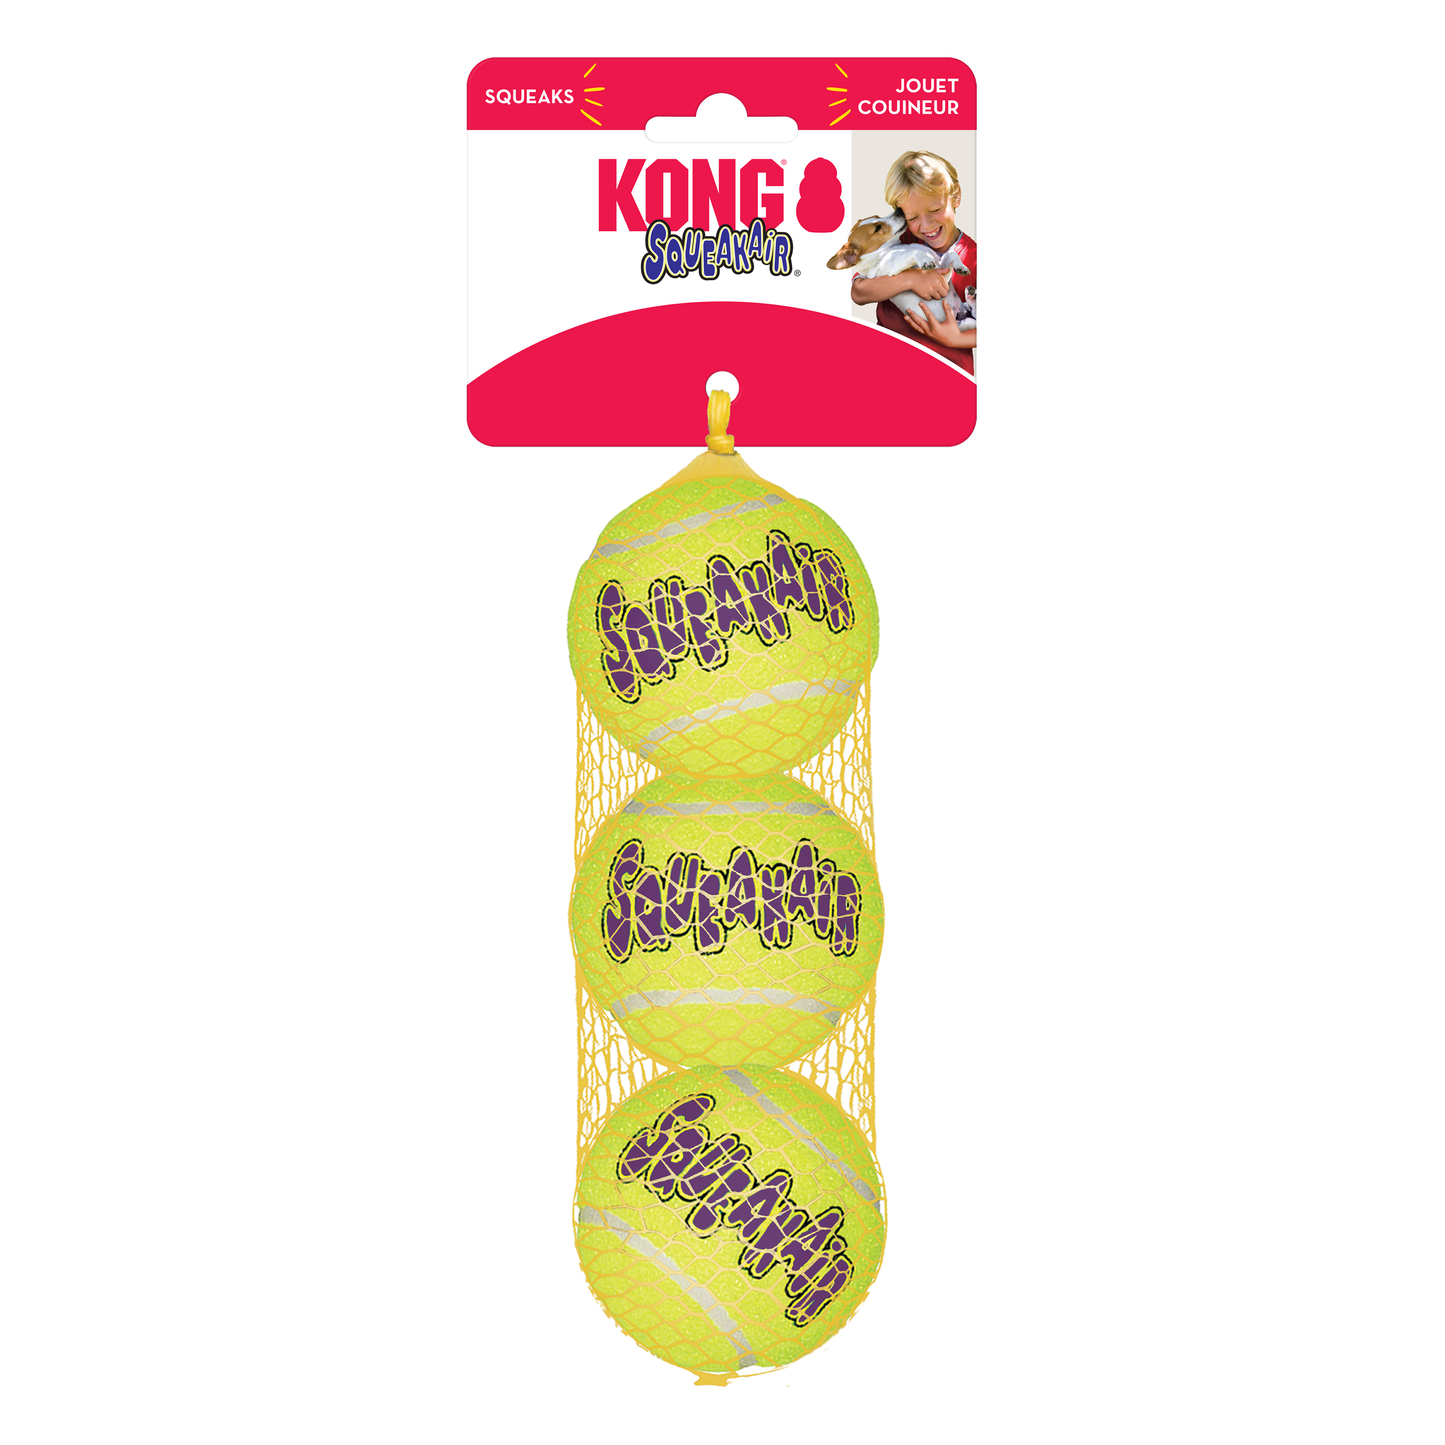 KONG Air Dog Squeaker Tennis Ball